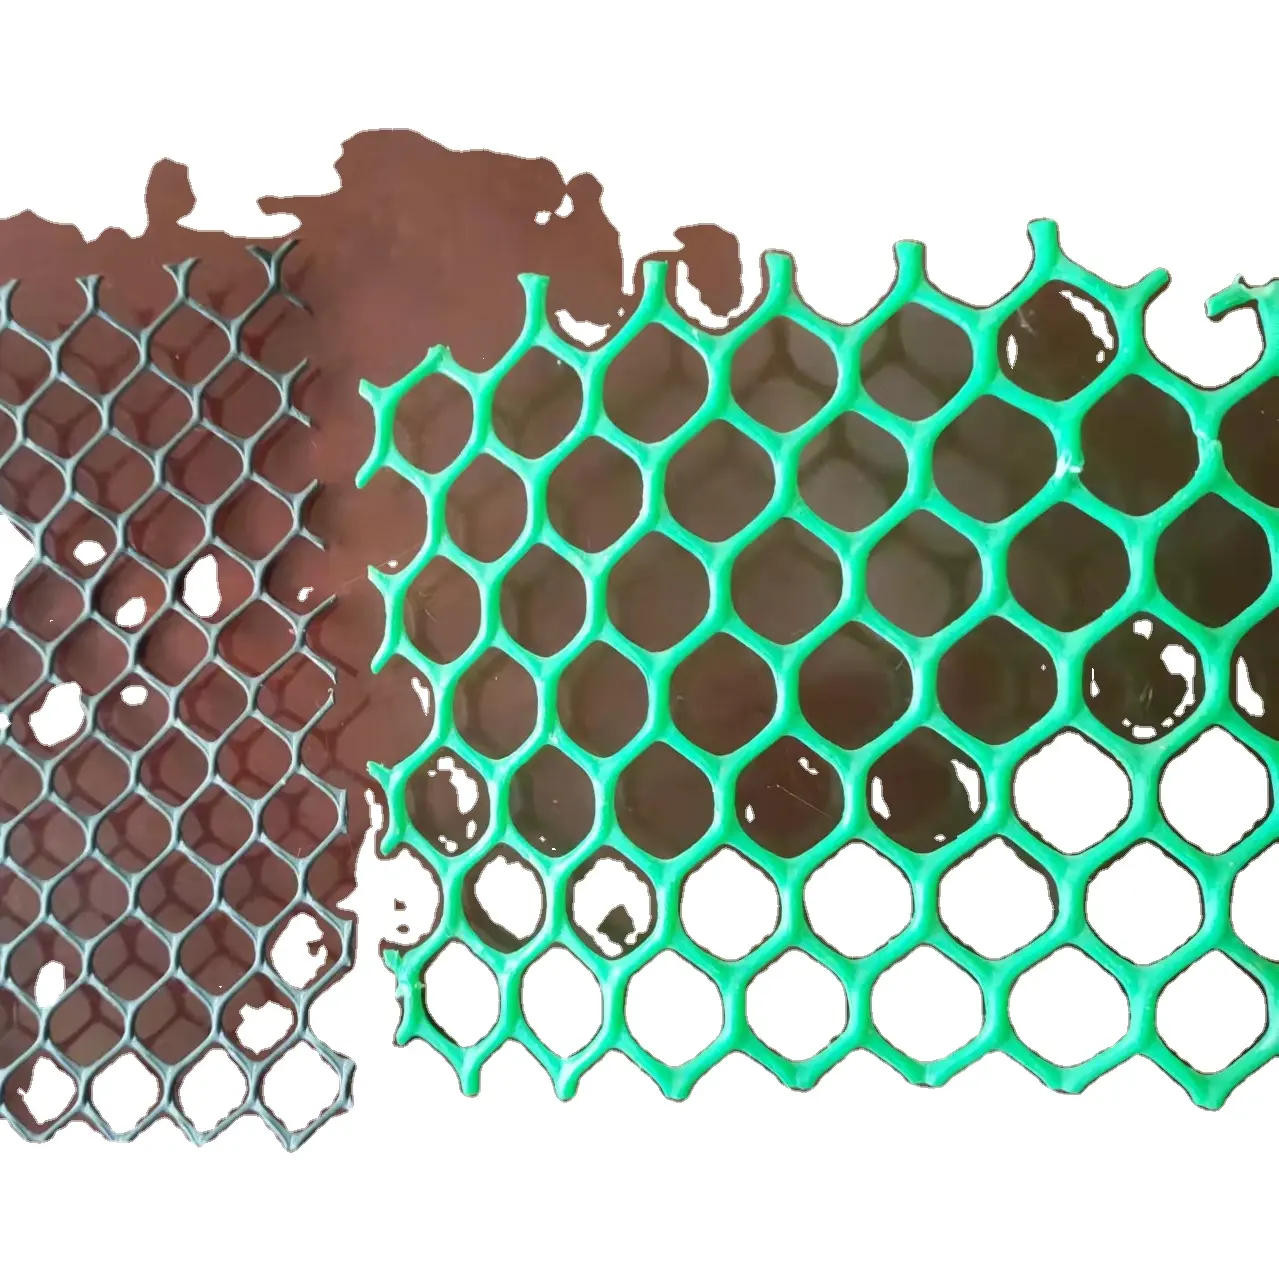 Biaxial gestreckte Netze/Klettern etz maschine aus Kunststoff